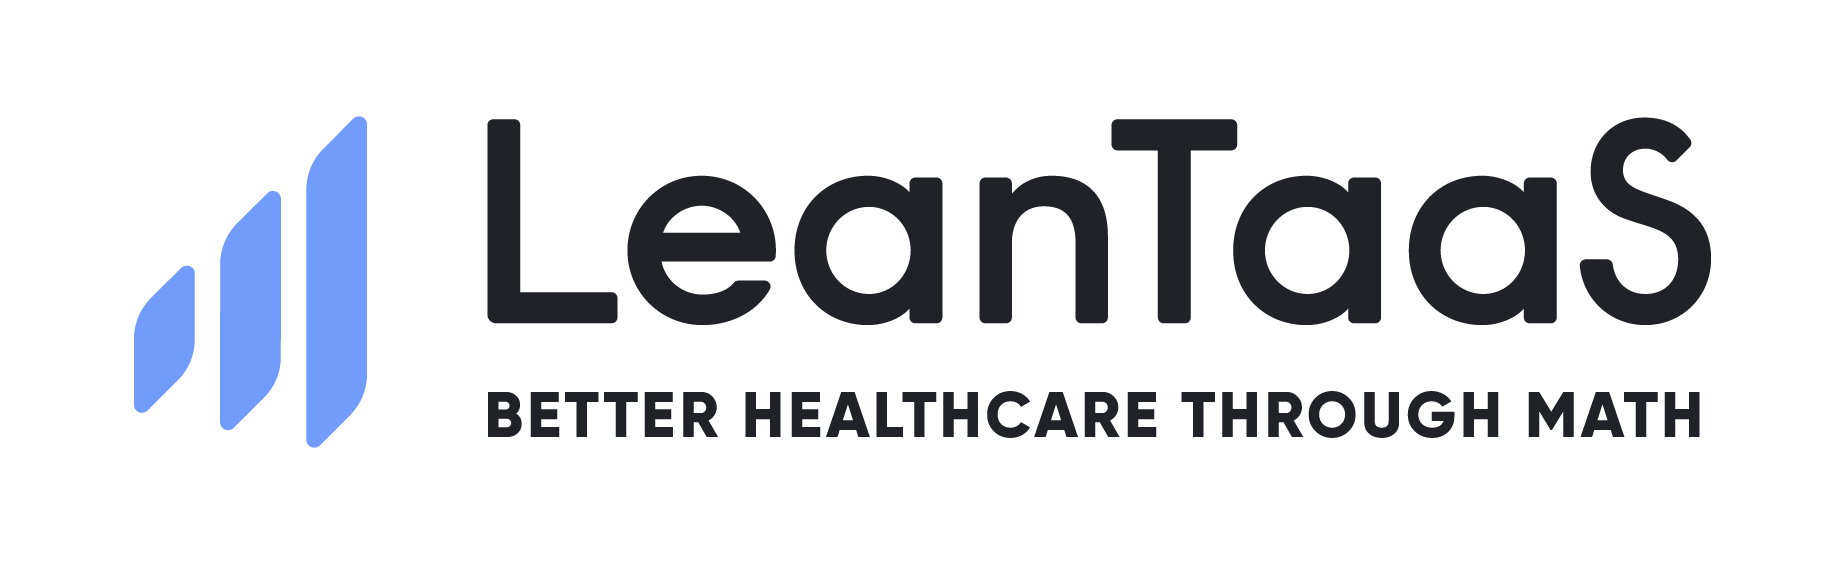 LeadTaaS logo